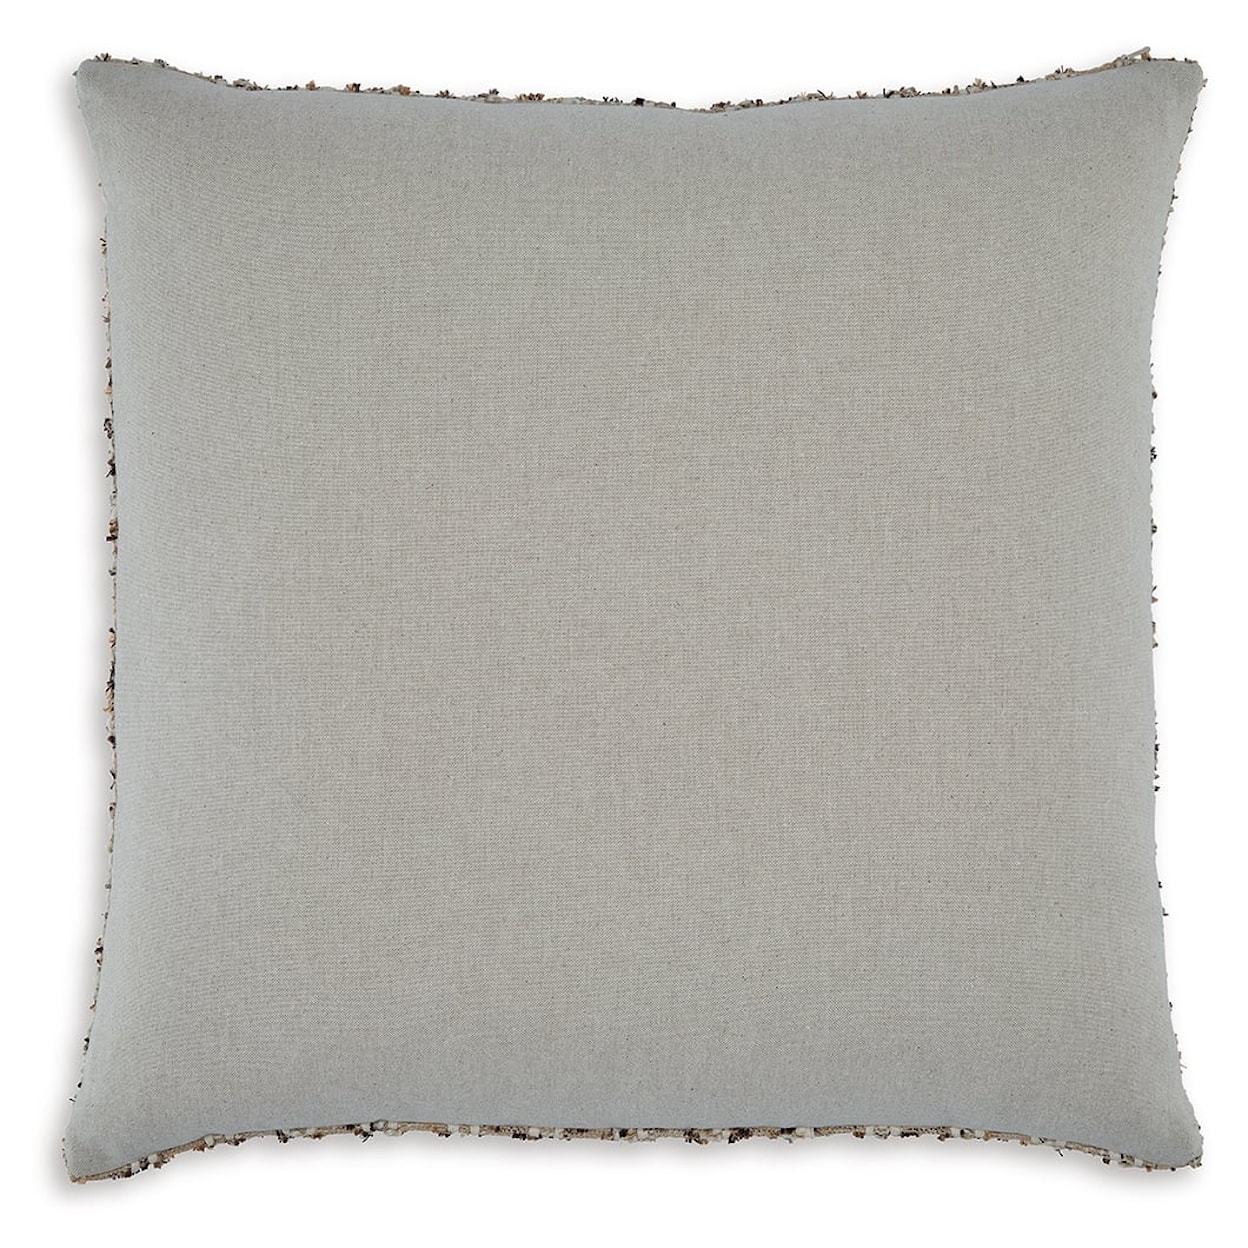 Ashley Furniture Signature Design Vorlane Pillow (Set Of 4)